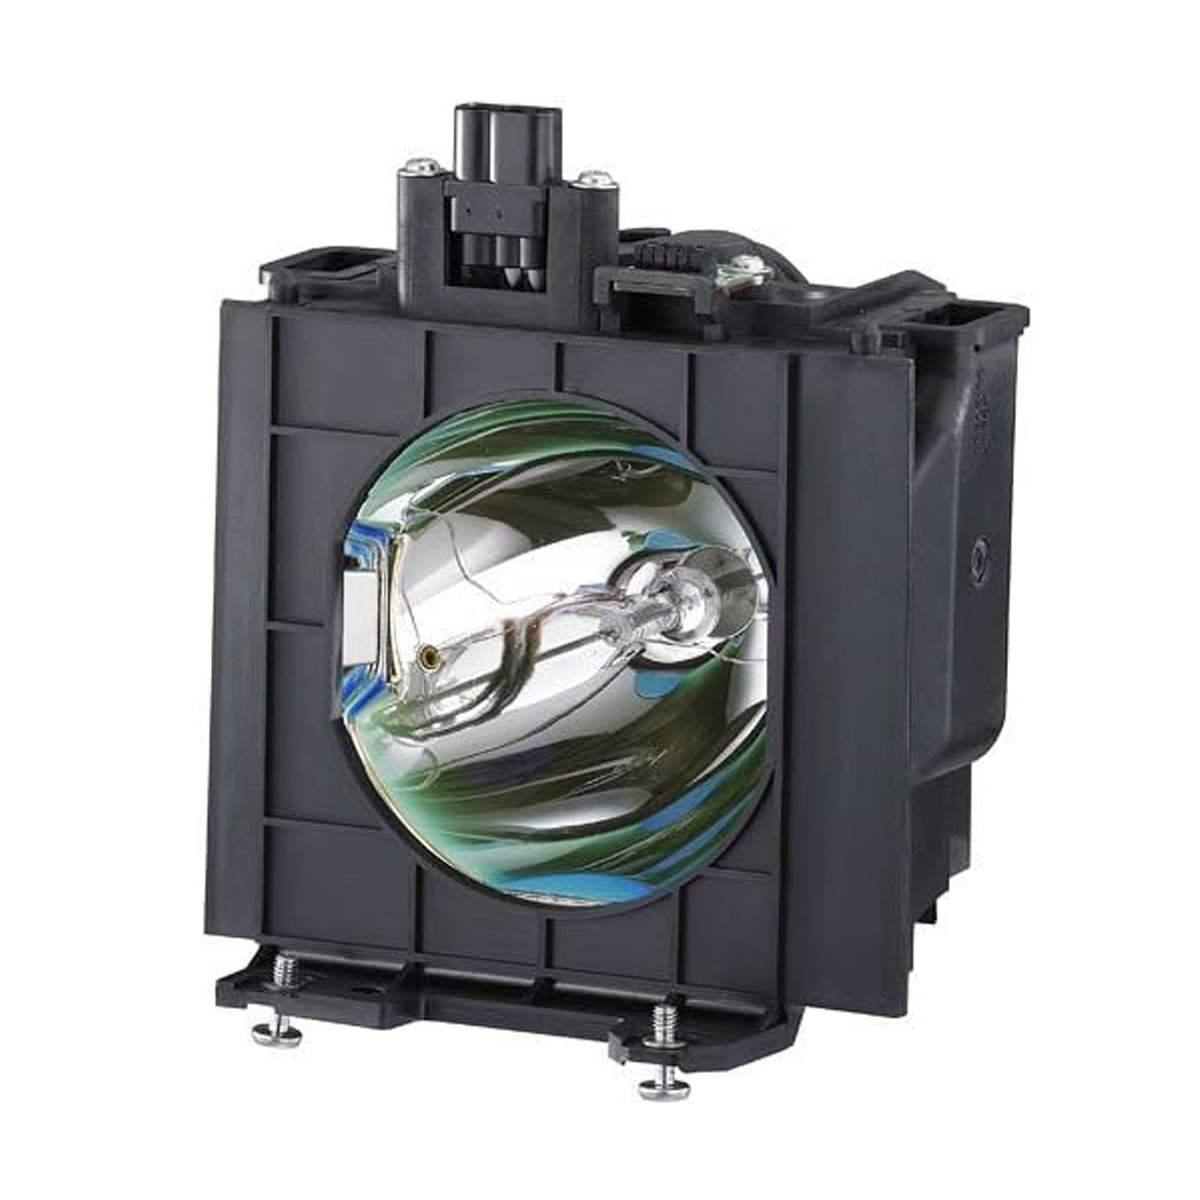 Replacement Projector lamp ET-LAD57 For PANASONIC PT-D5100 PT-D5700 PT-DW5100